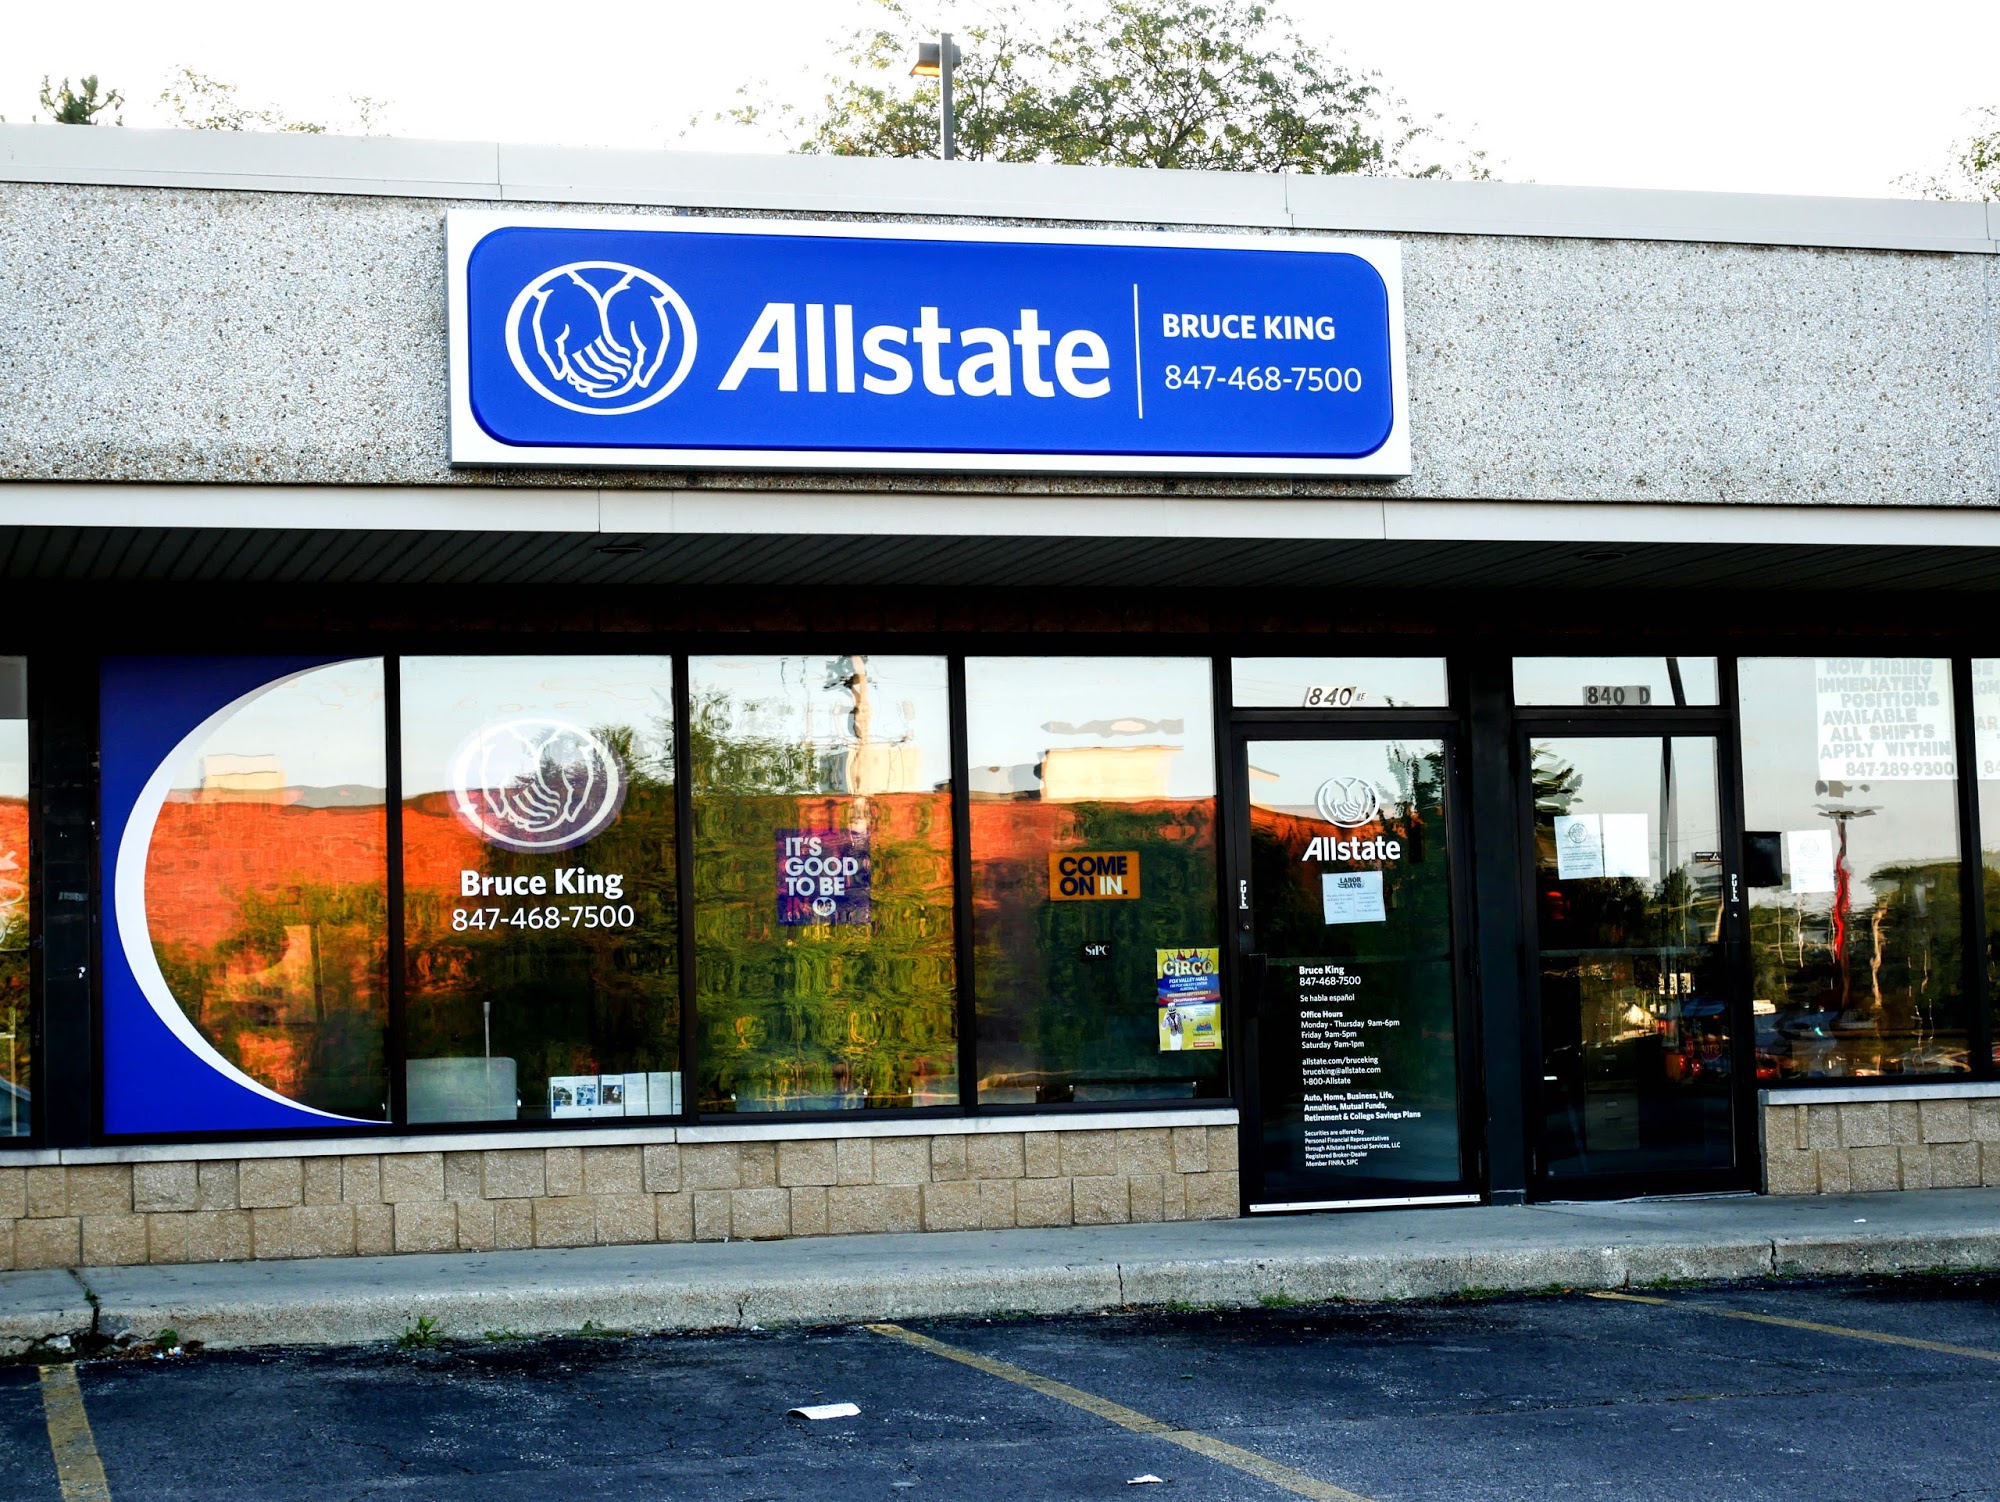 Bruce King: Allstate Insurance